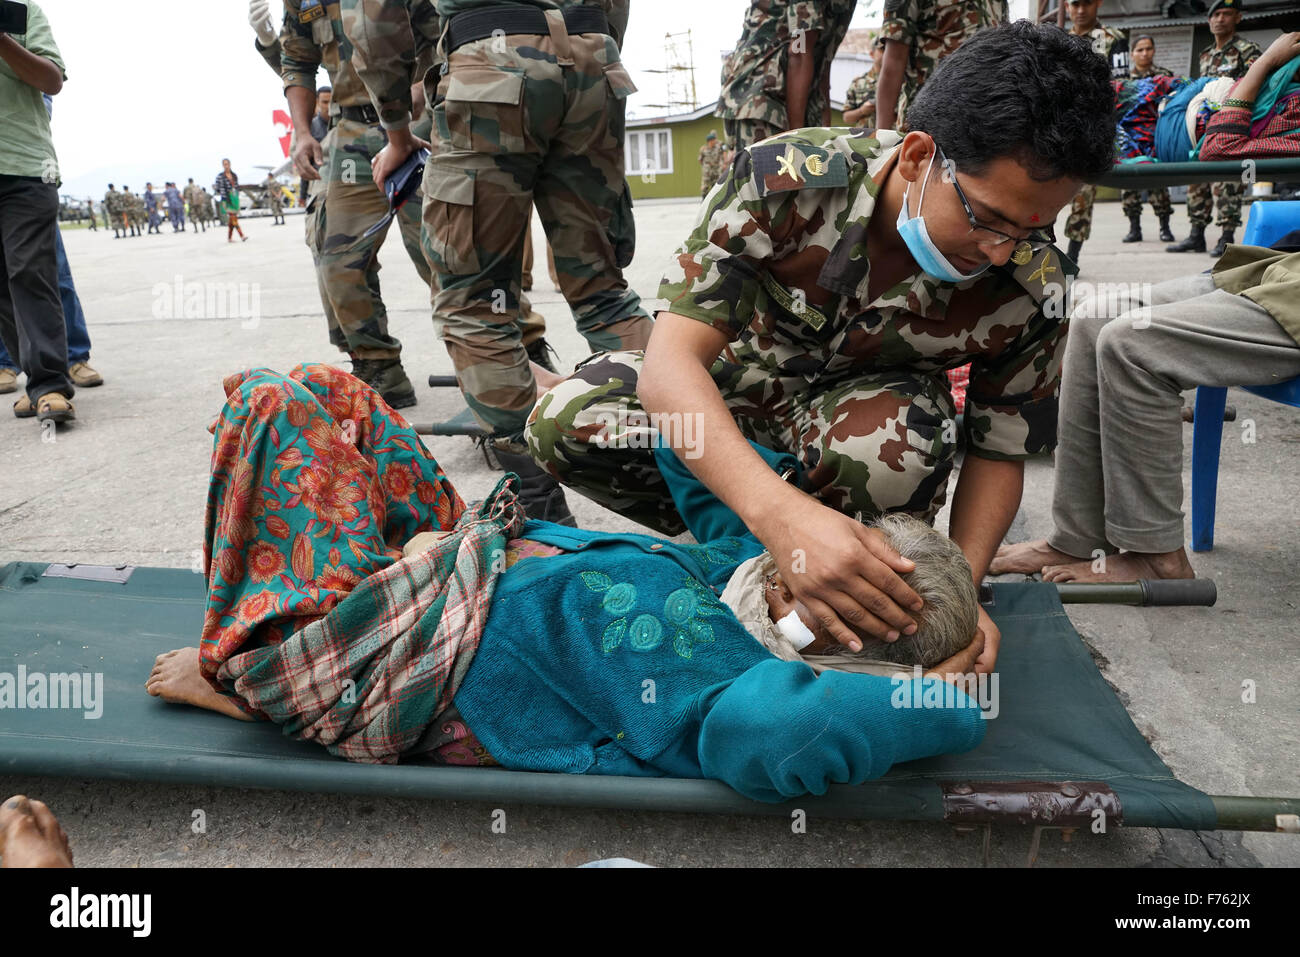 Armee-medizinisches Personal zu behandeln, verletzte Person, Nepal, Asien Stockfoto